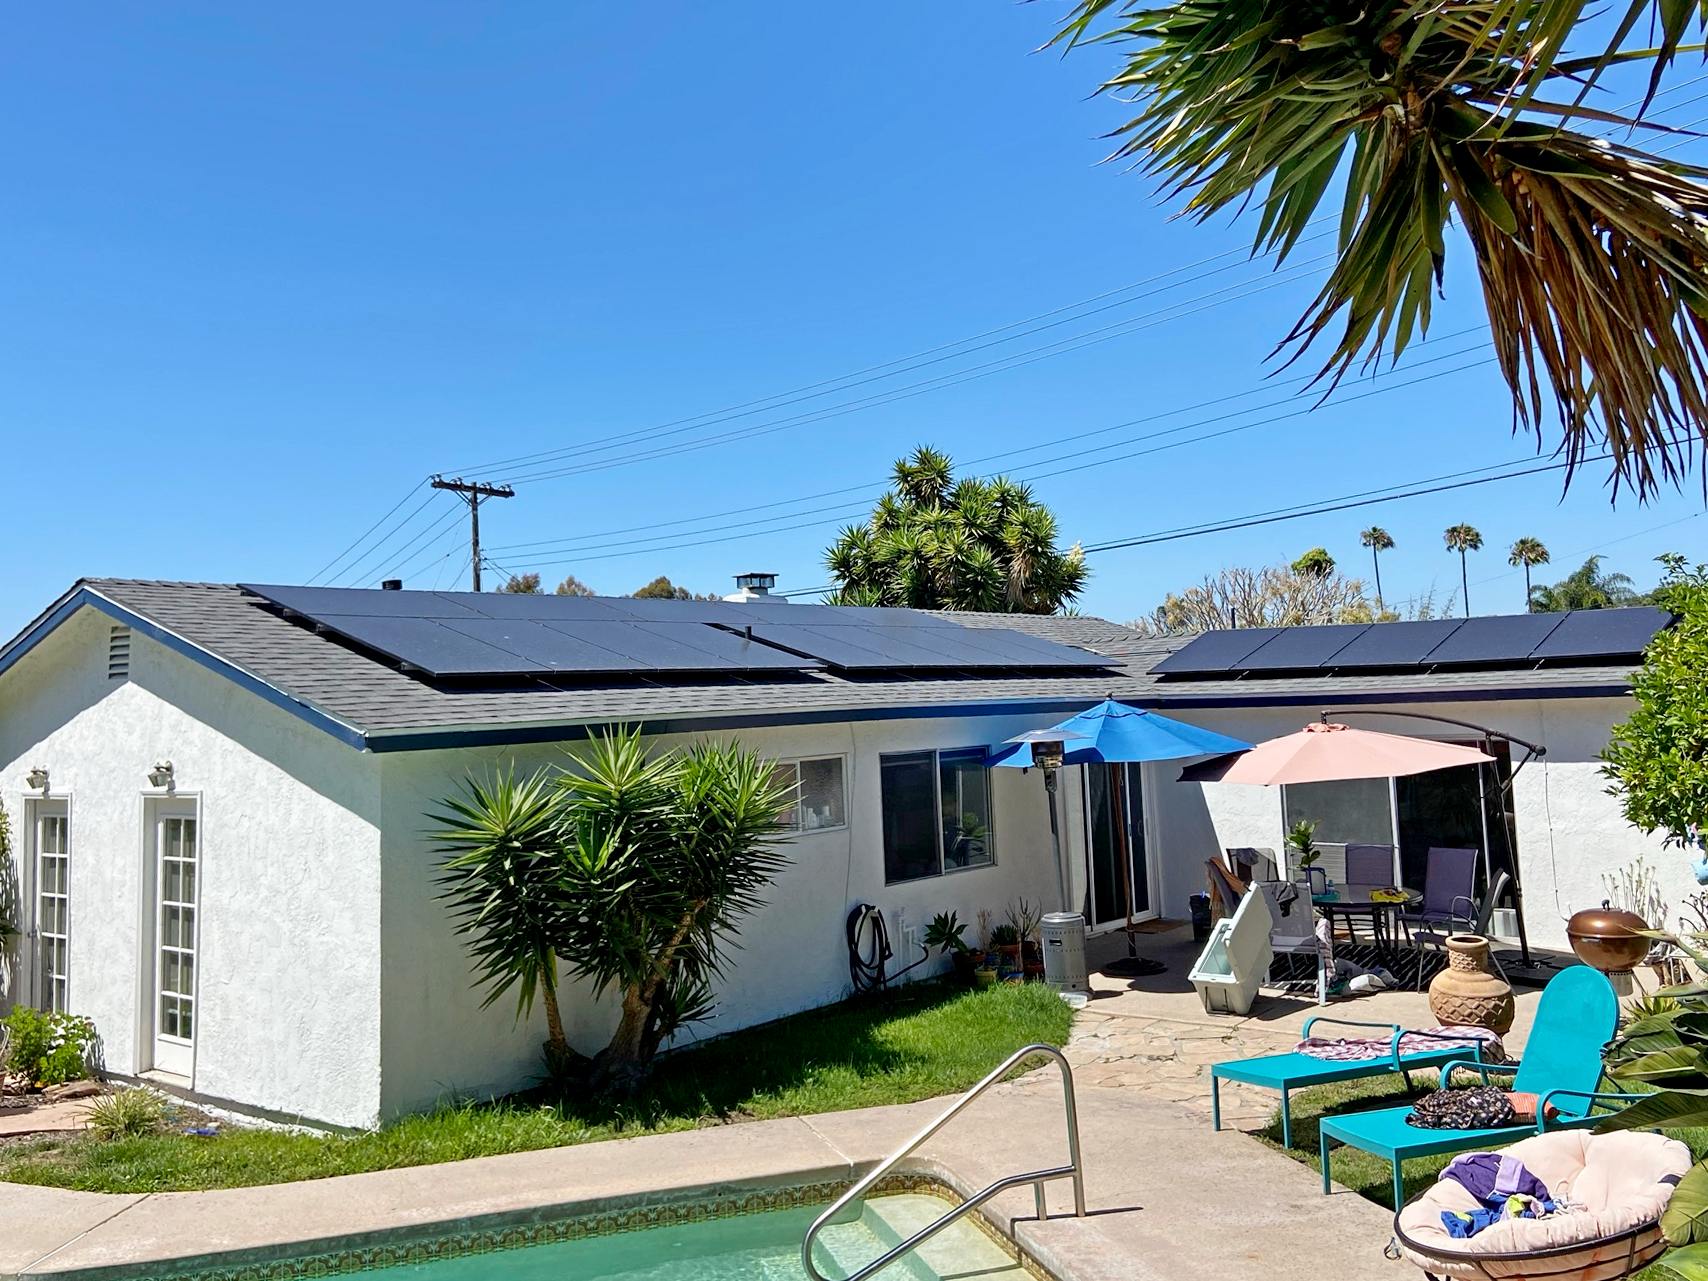 Solar Installation in San Diego, CA (4)